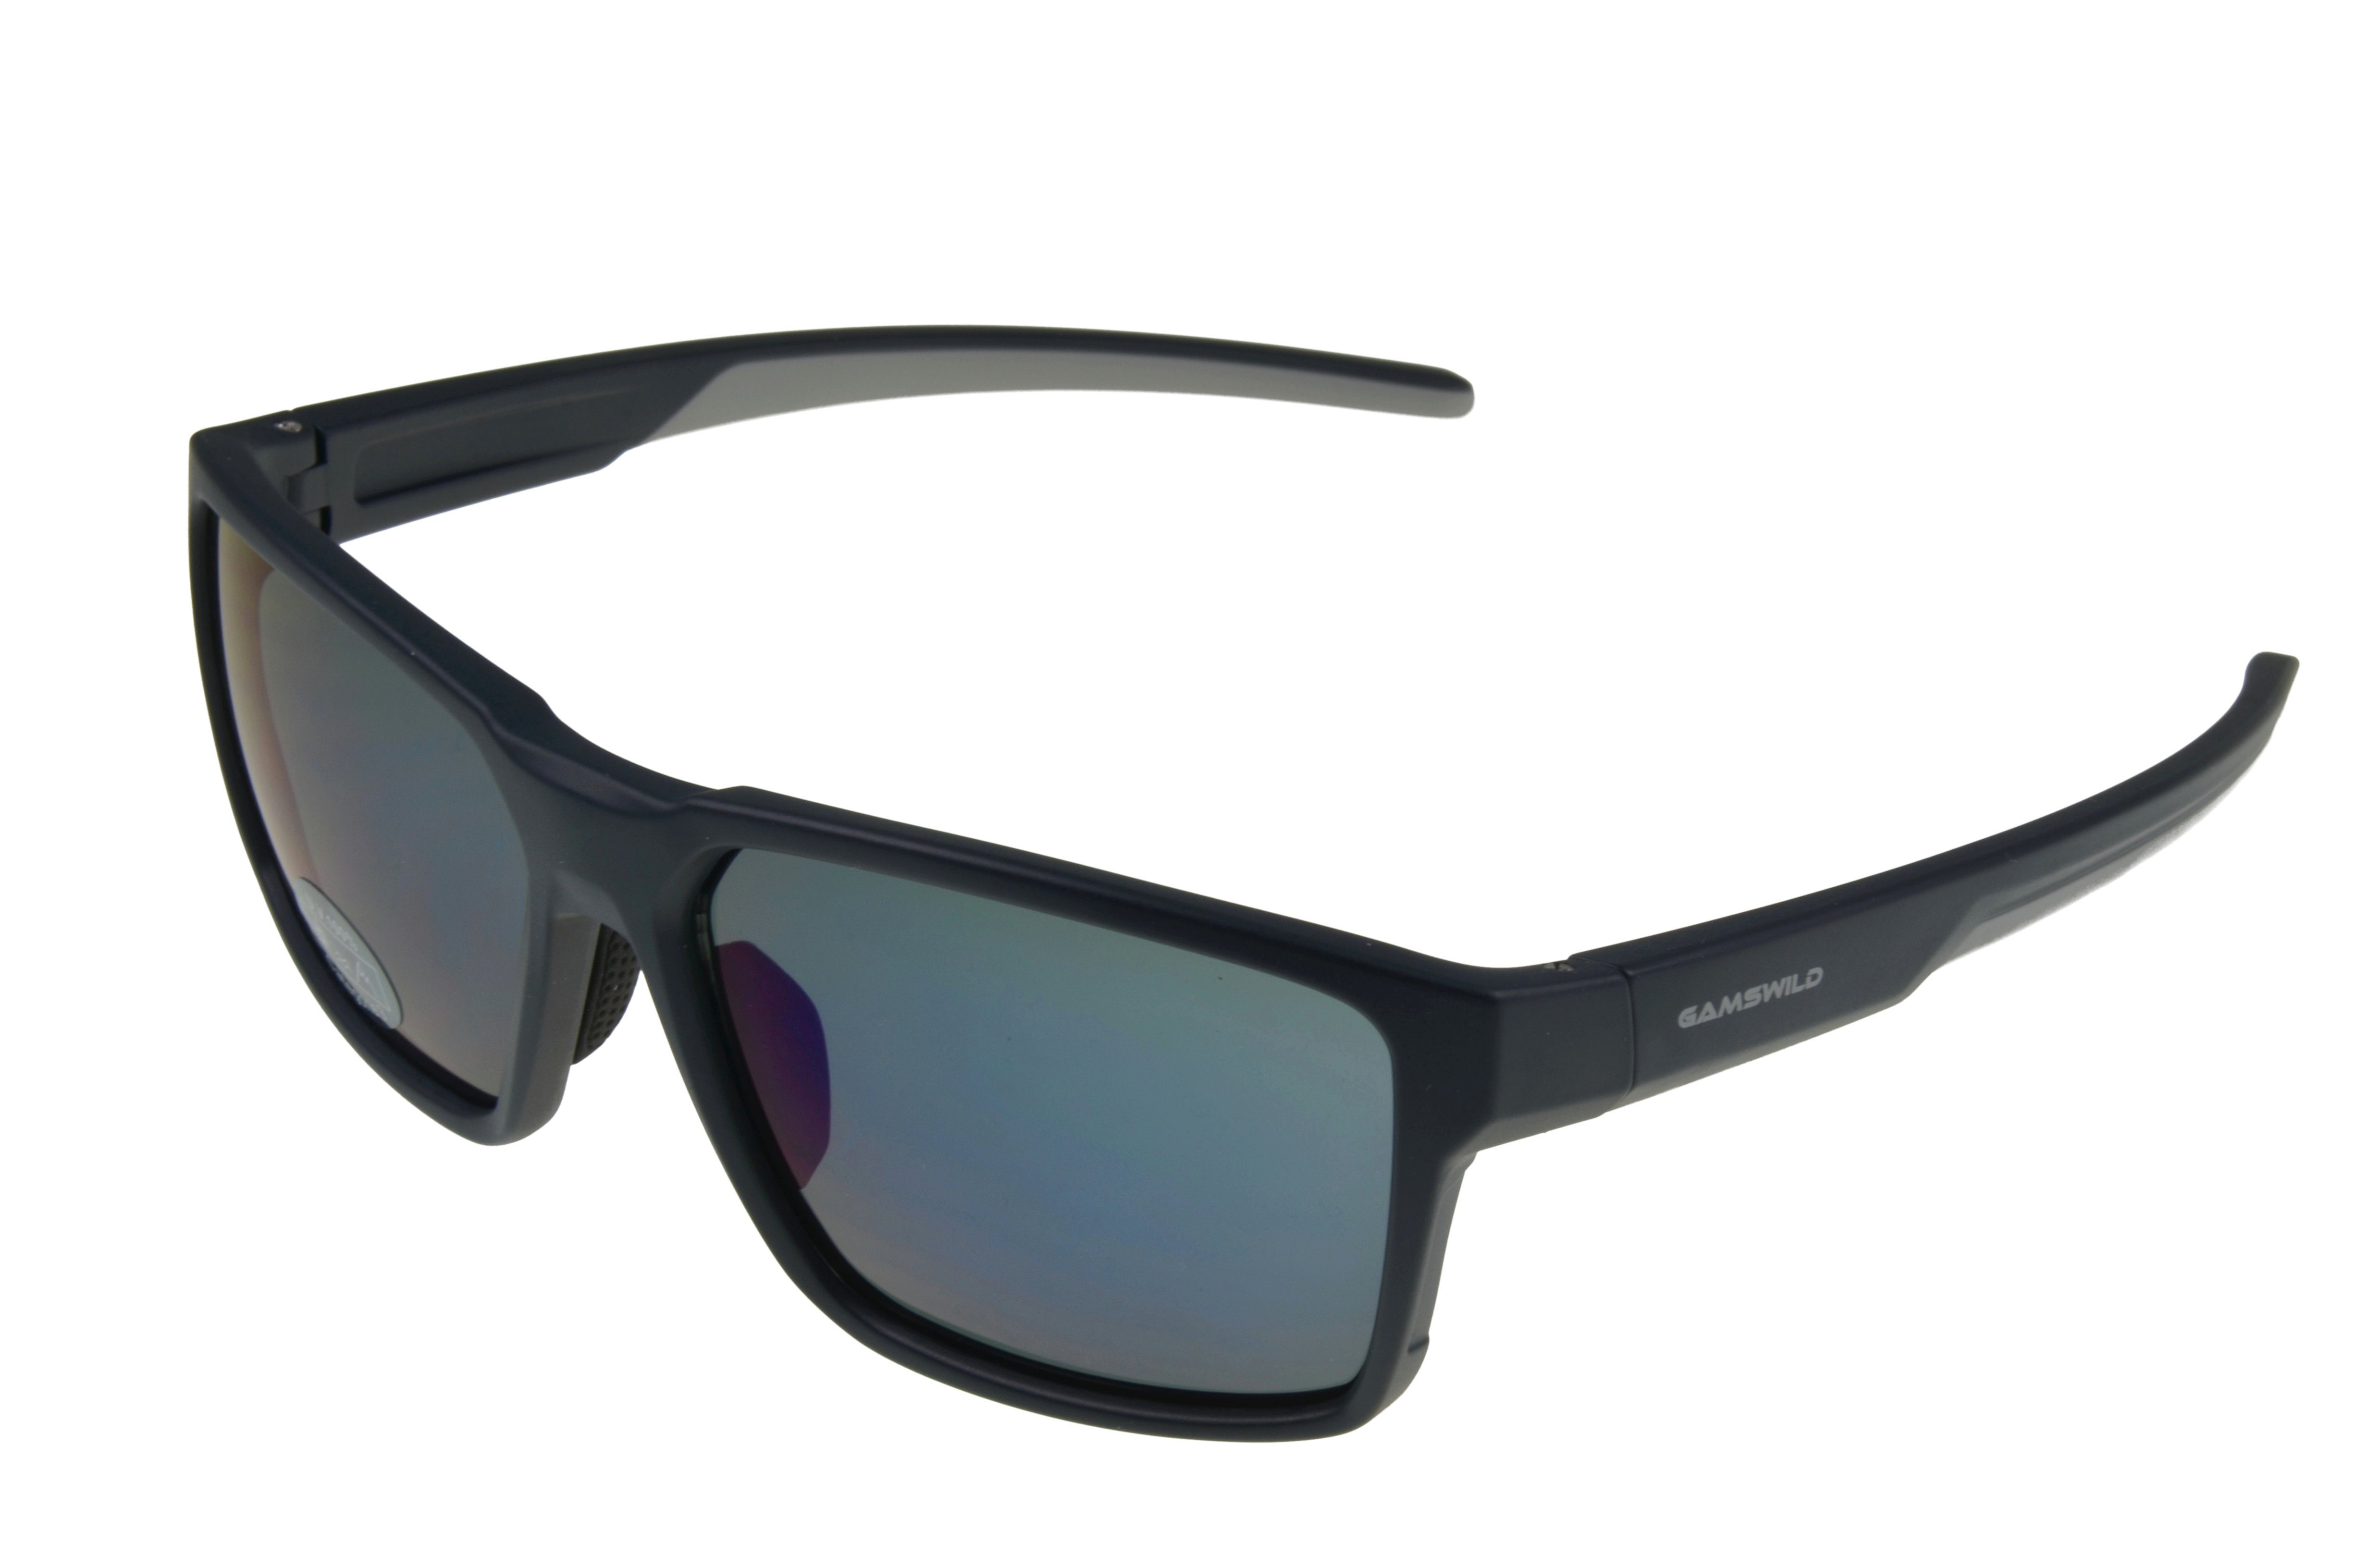 Gamswild Sonnenbrille WS5936 Sportbrille Skibrille Fahrradbrille Damen Herren Unisex getönte Gläser schwarz, grau, braun schwarz_blau